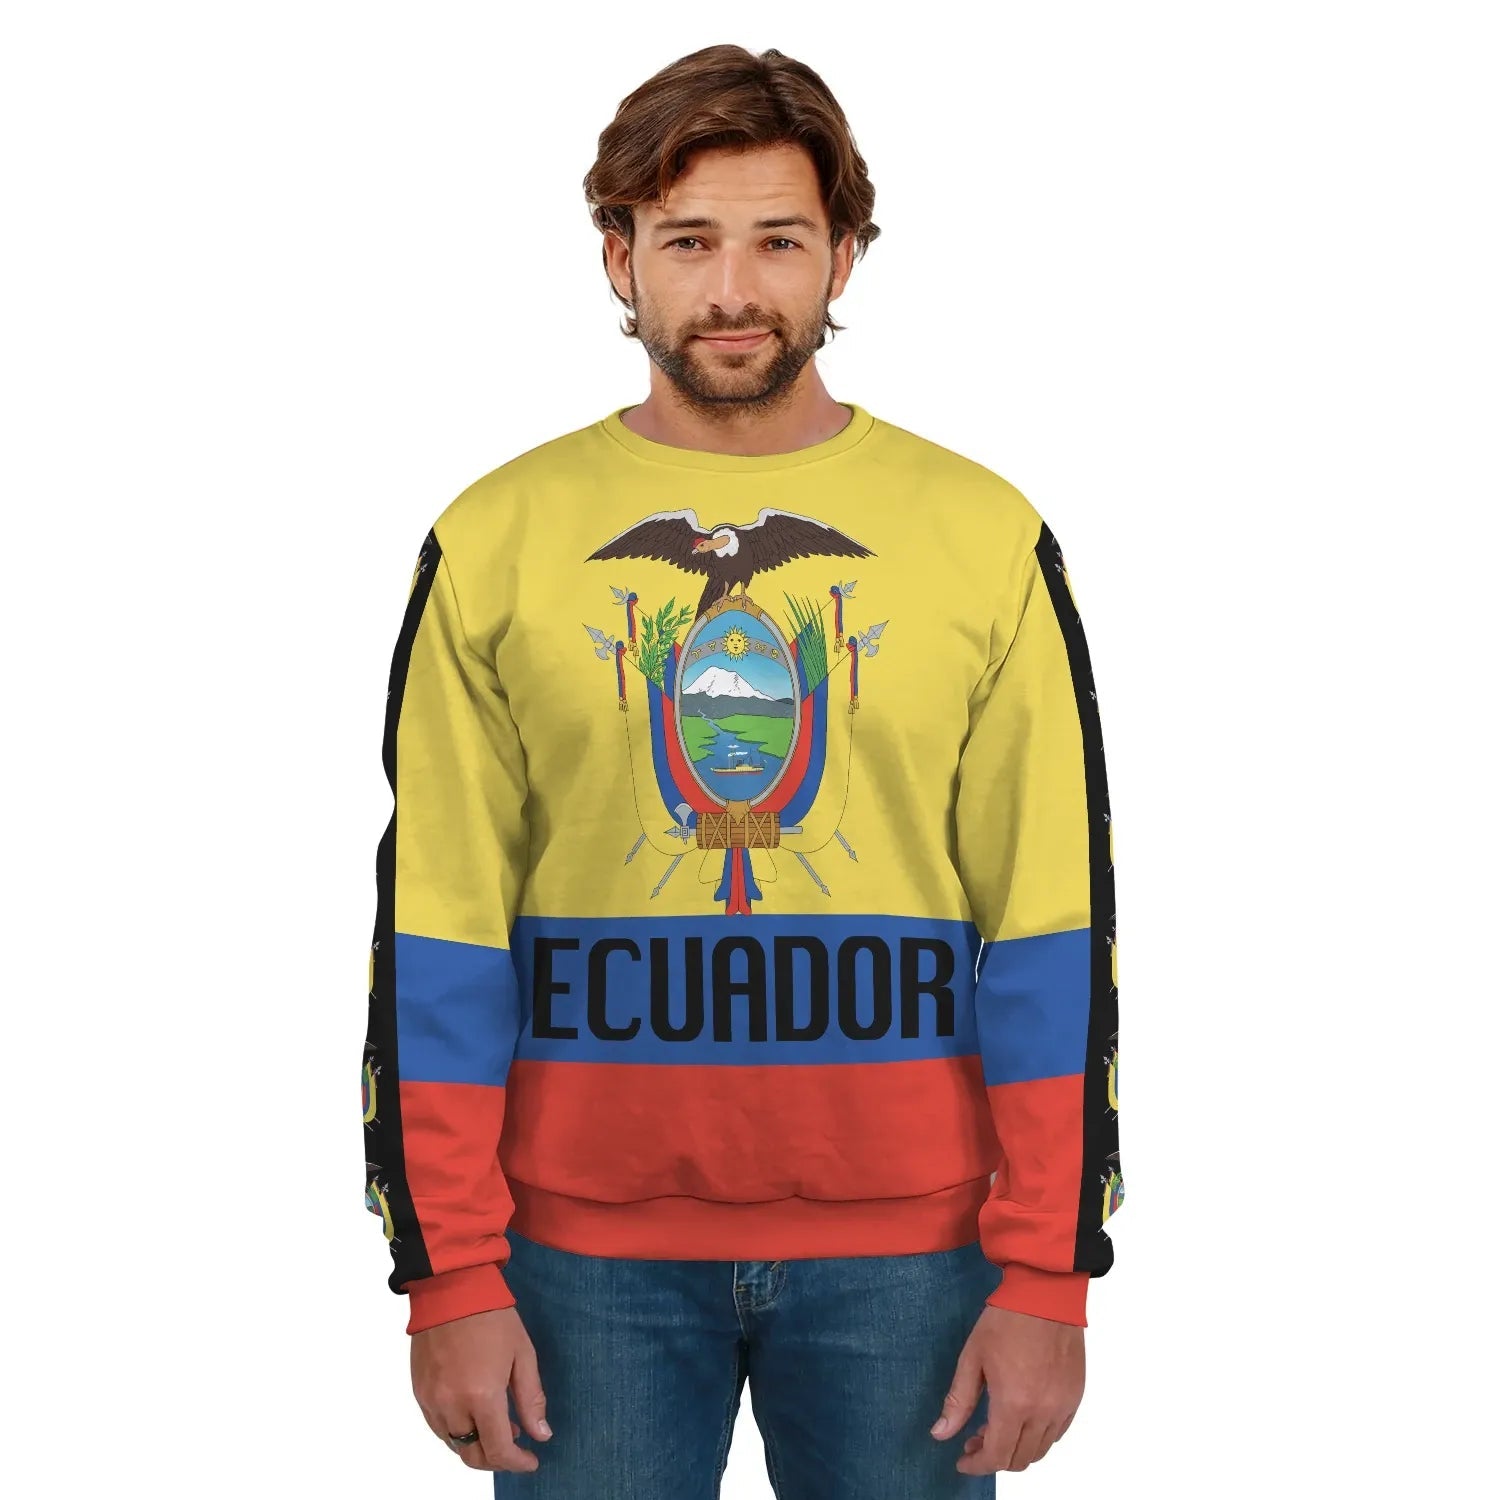 ecuador-coat-of-arms-sweatshirt